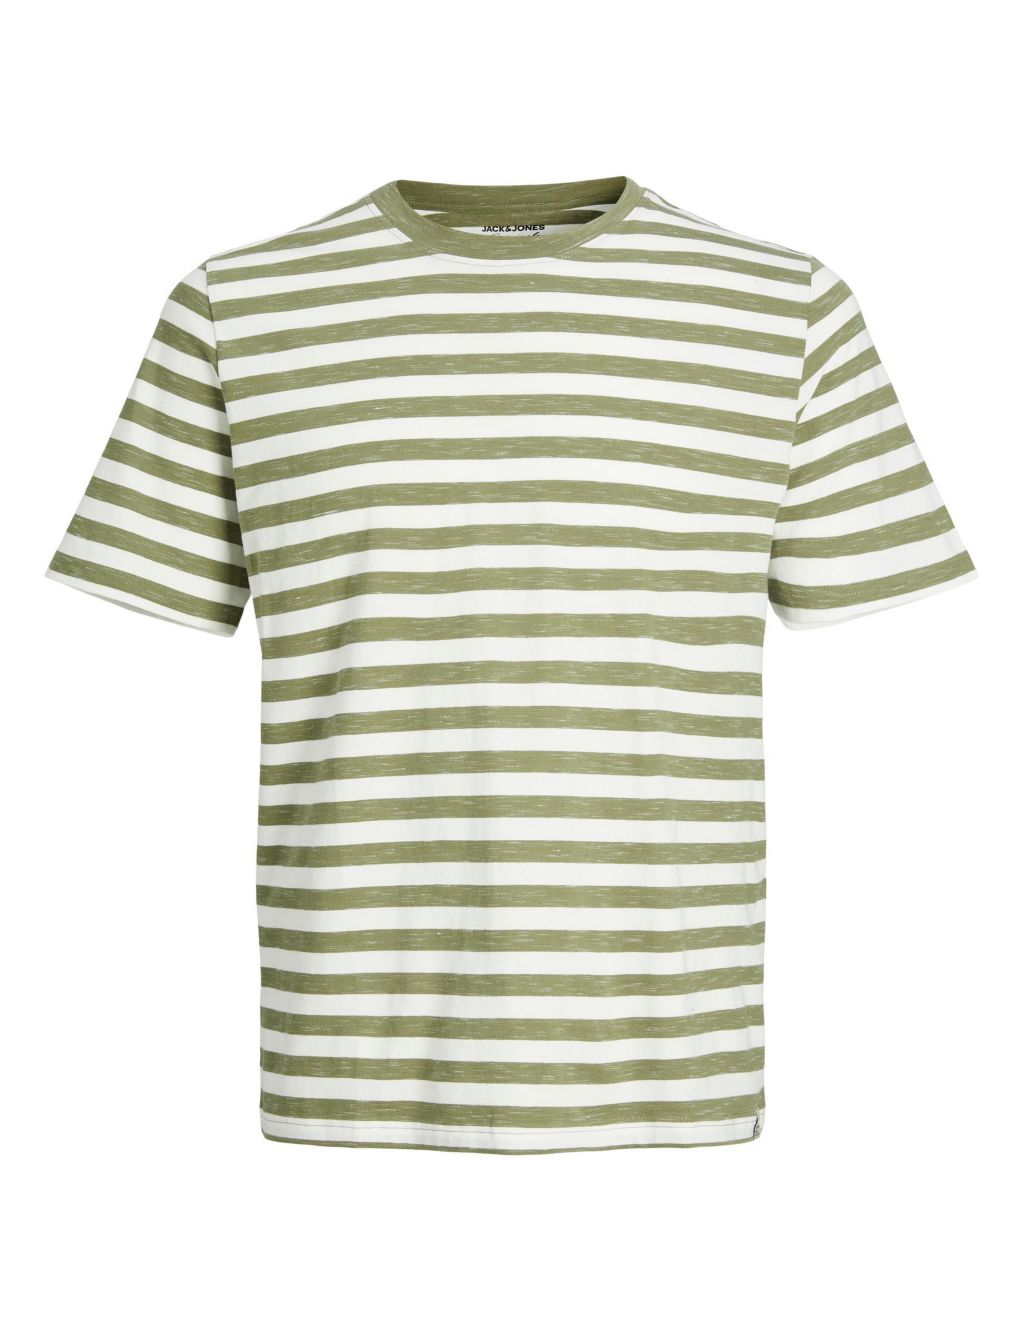 Cotton Rich Striped Crew Neck T-Shirt image 2